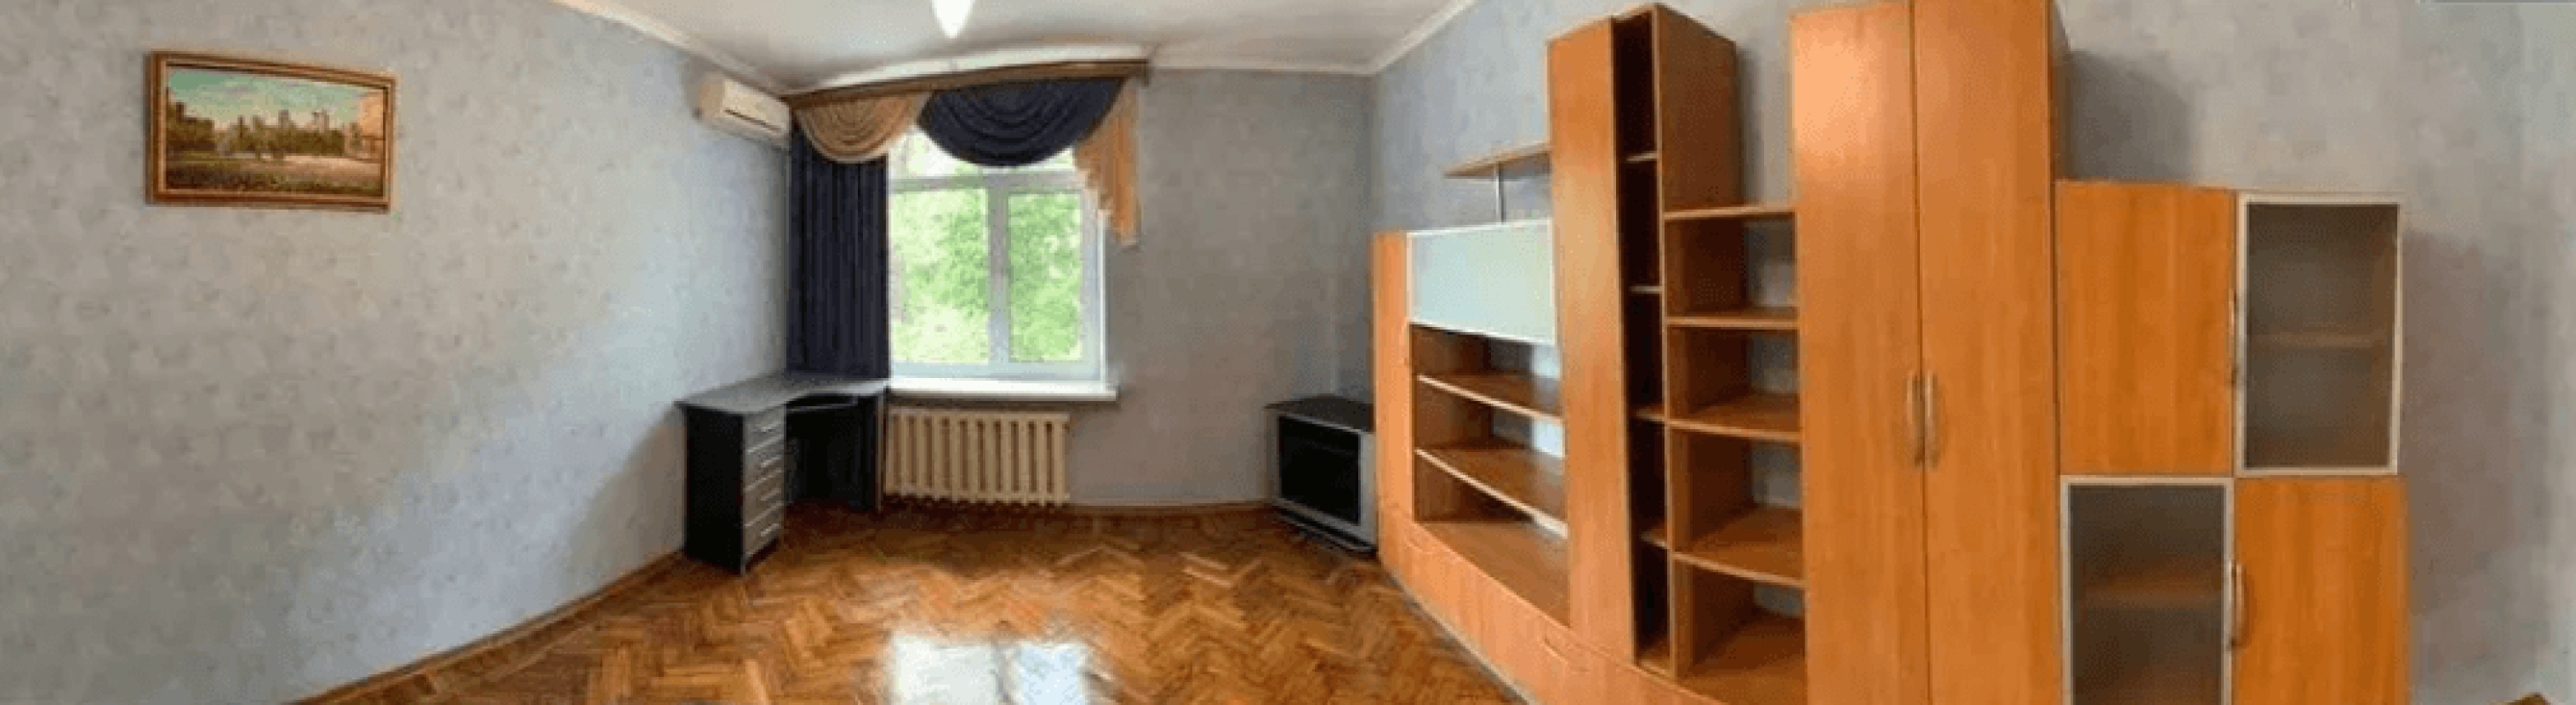 Долгосрочная аренда 2 комнатной квартиры Григоровское шоссе (Комсомольское шоссе)